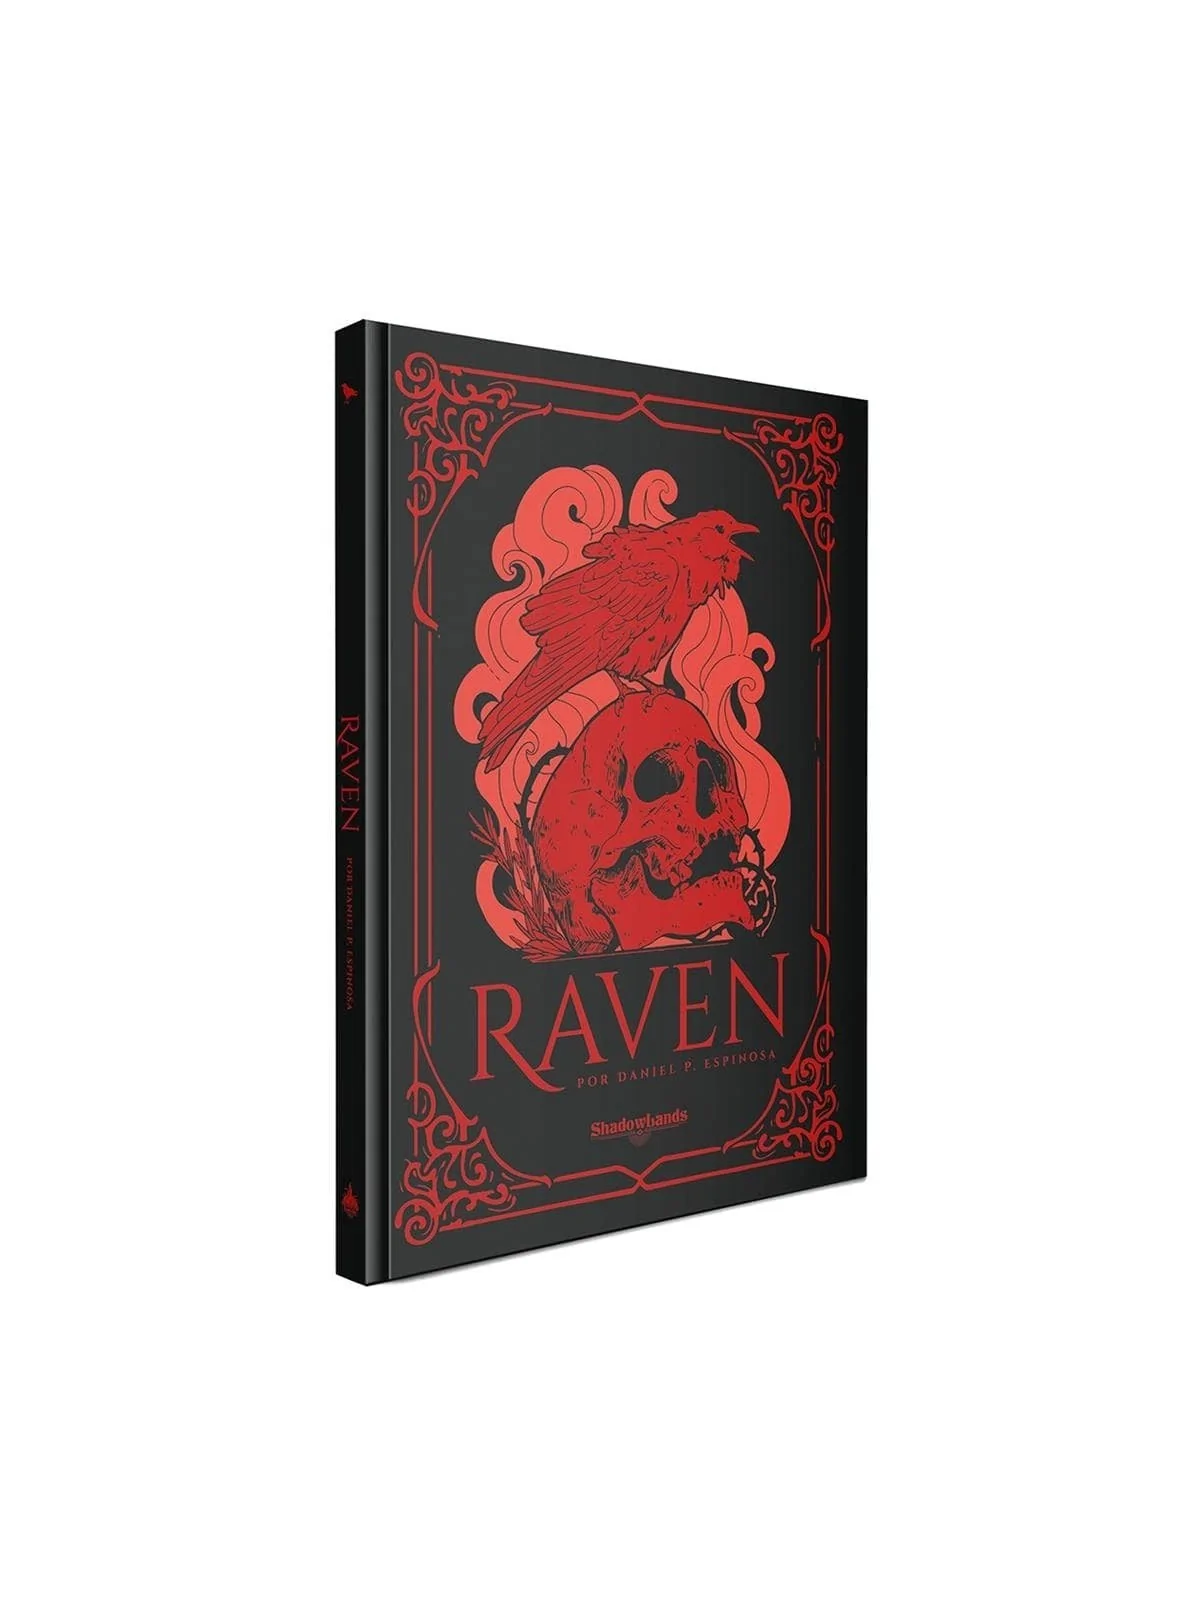 Comprar Raven barato al mejor precio 47,45 € de Shadowlands Ediciones